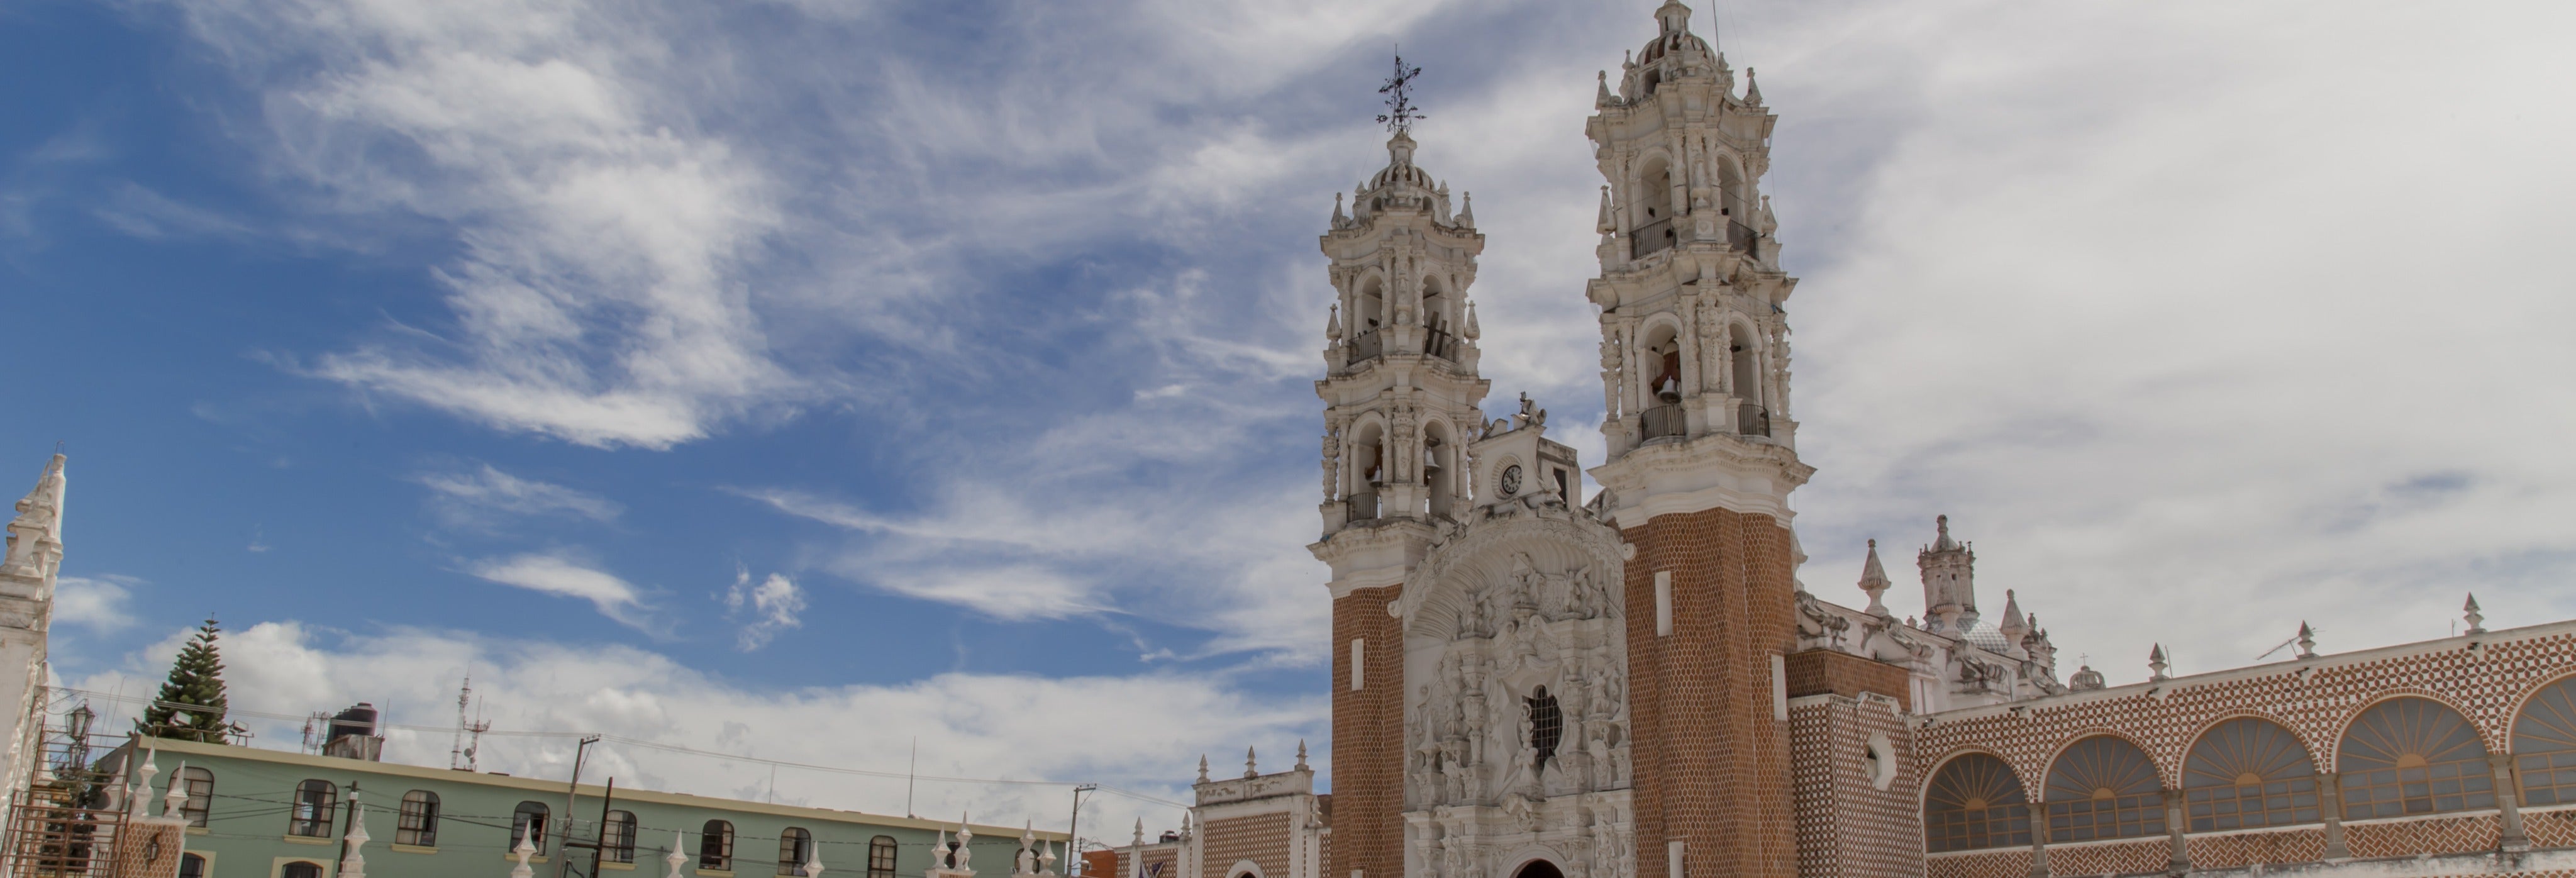 Excursión a Ocotlán desde Oaxaca